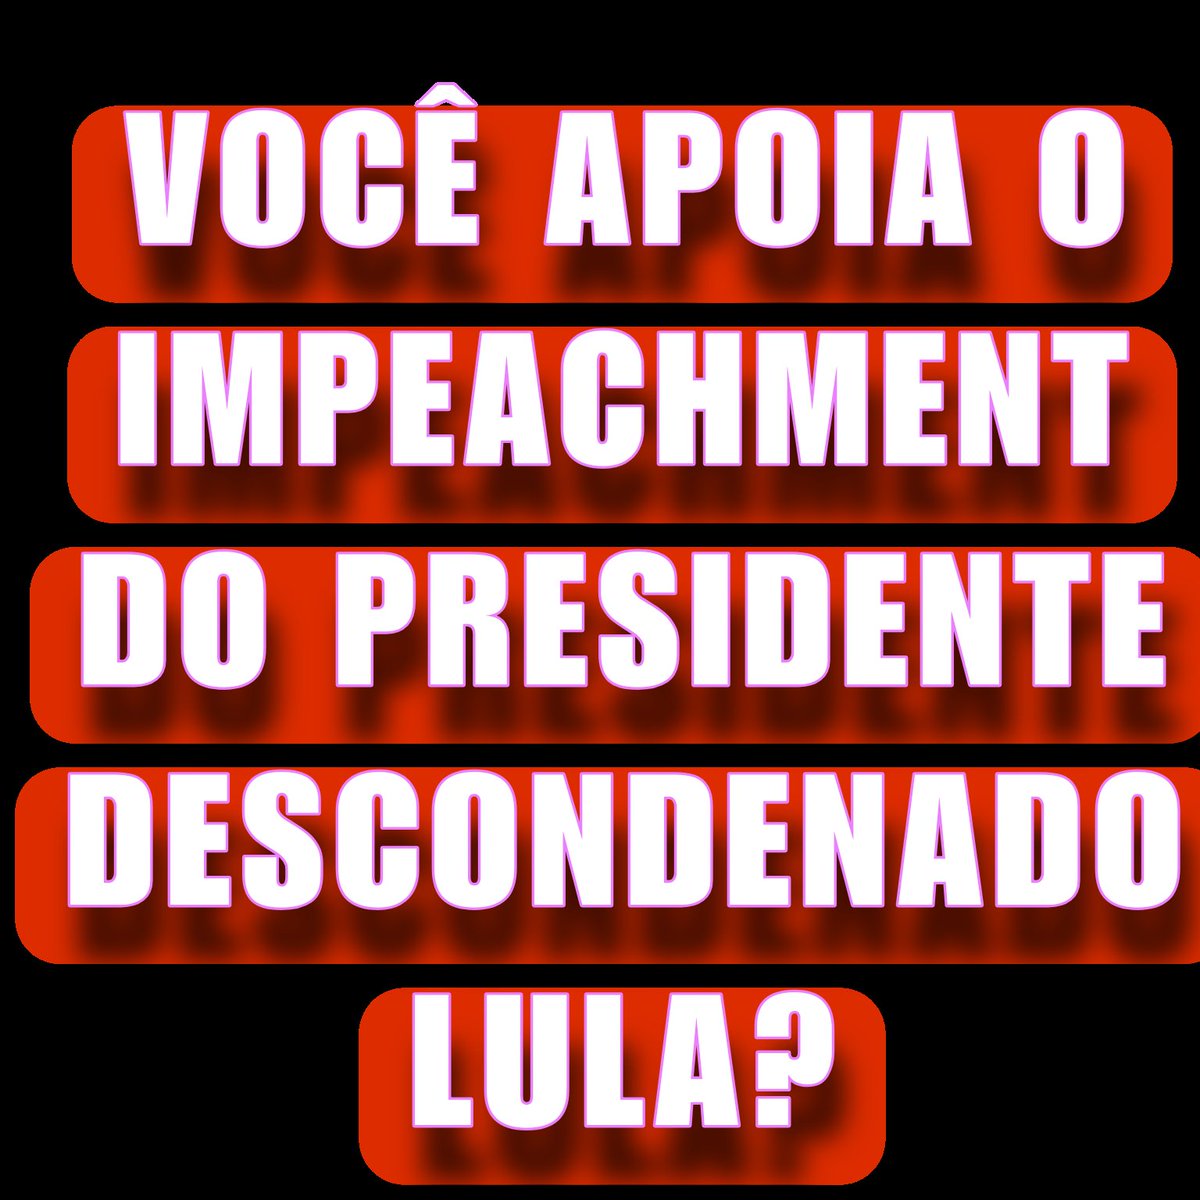 Você apoia o IMPEACHMENT do Presidente DESCONDENADO, Lula?